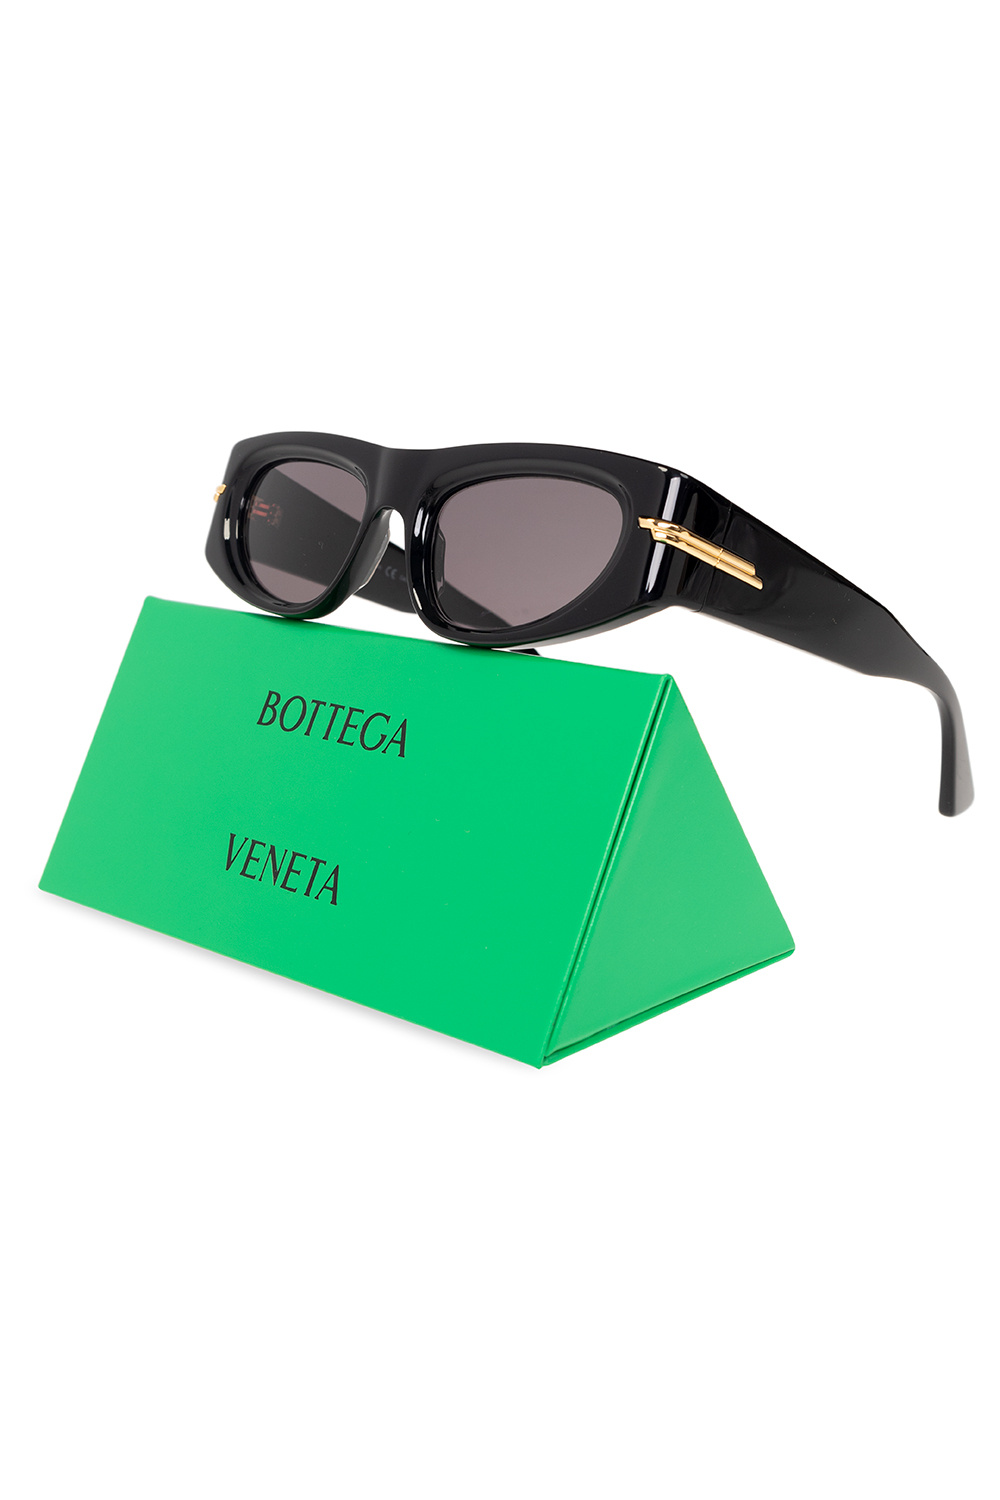 Bottega Veneta tortoiseshell injection sunglasses gucci glasses